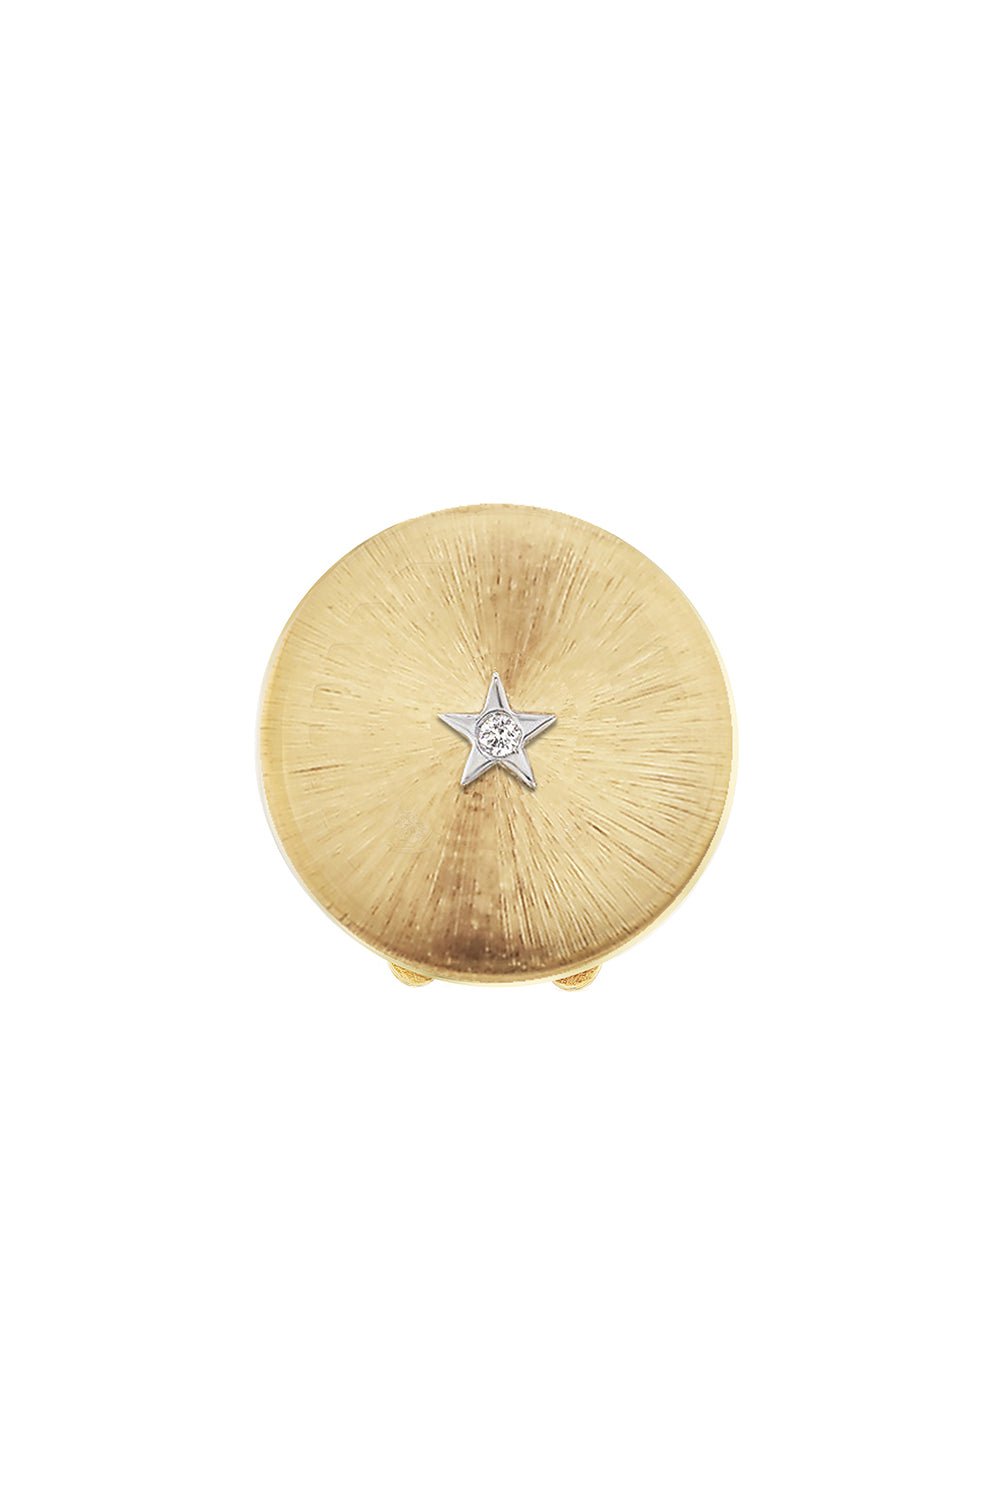 ANNA MACCIERI ROSSI-Star Button Cover-YELLOW GOLD